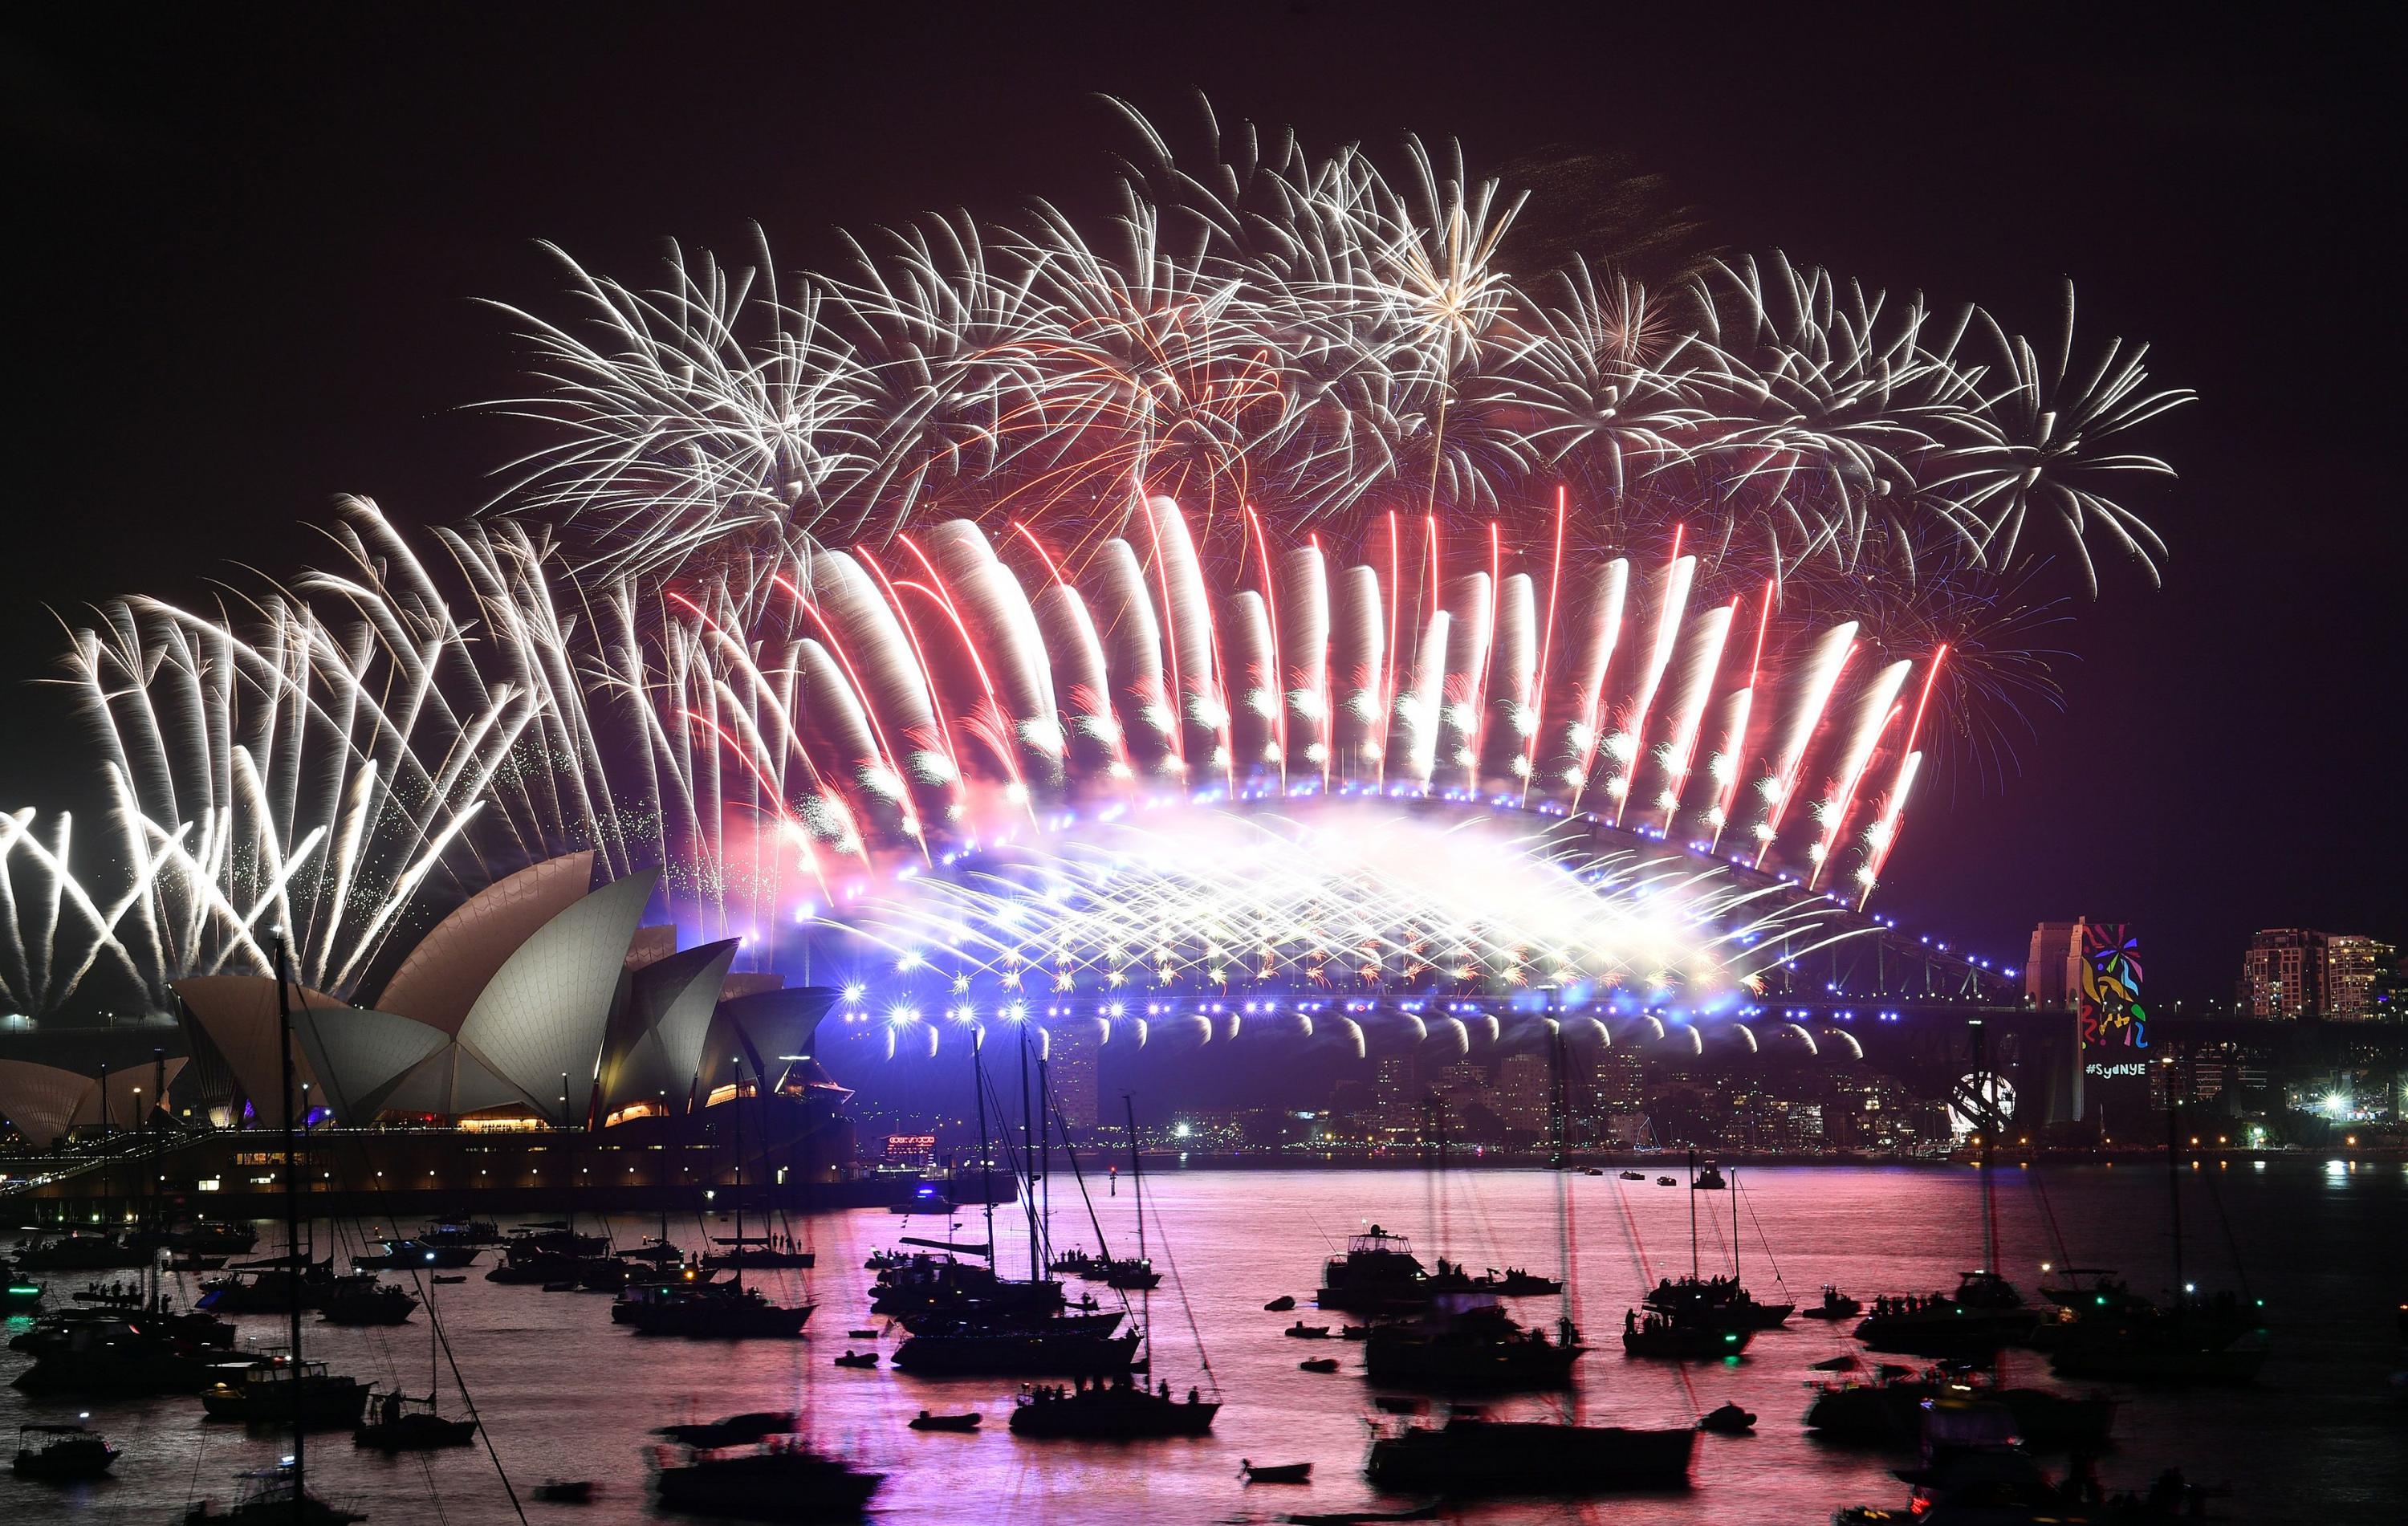 FOTO 1 | La ciudad de Sidney reunió a más de 1.5 millones de espectadores en la costa australiana mientras los fuegos artificiales iluminarán el cielo nocturno. (Foto: AFP)